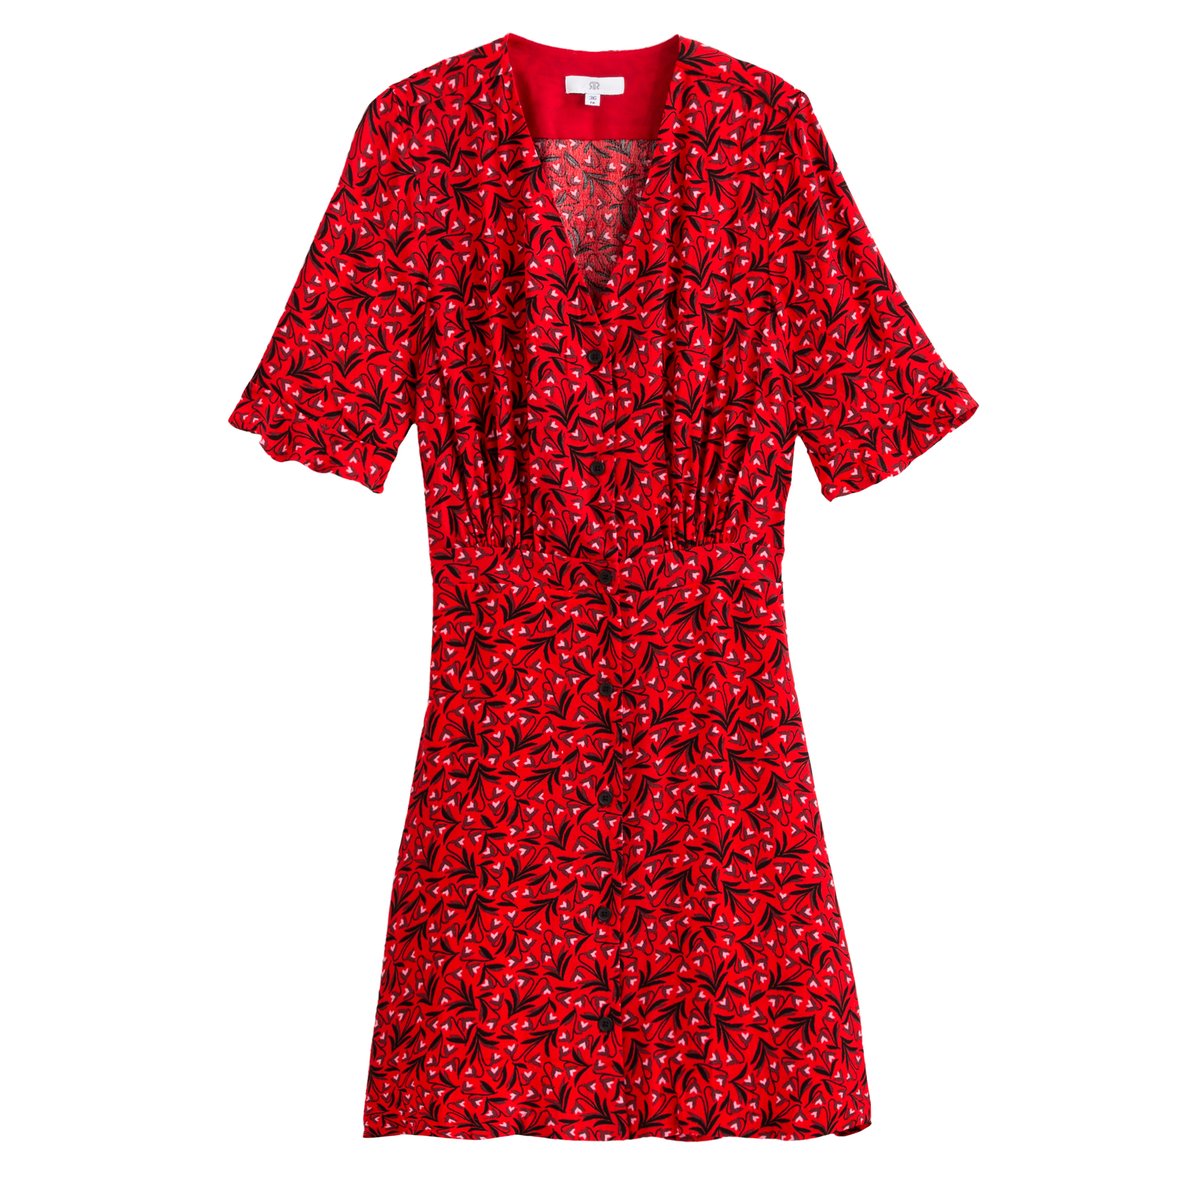 Платье La Redoute Короткое расклешенное с V-образным вырезом и короткими рукавами 34 (FR) - 40 (RUS) красный, размер 34 (FR) - 40 (RUS) Короткое расклешенное с V-образным вырезом и короткими рукавами 34 (FR) - 40 (RUS) красный - фото 5